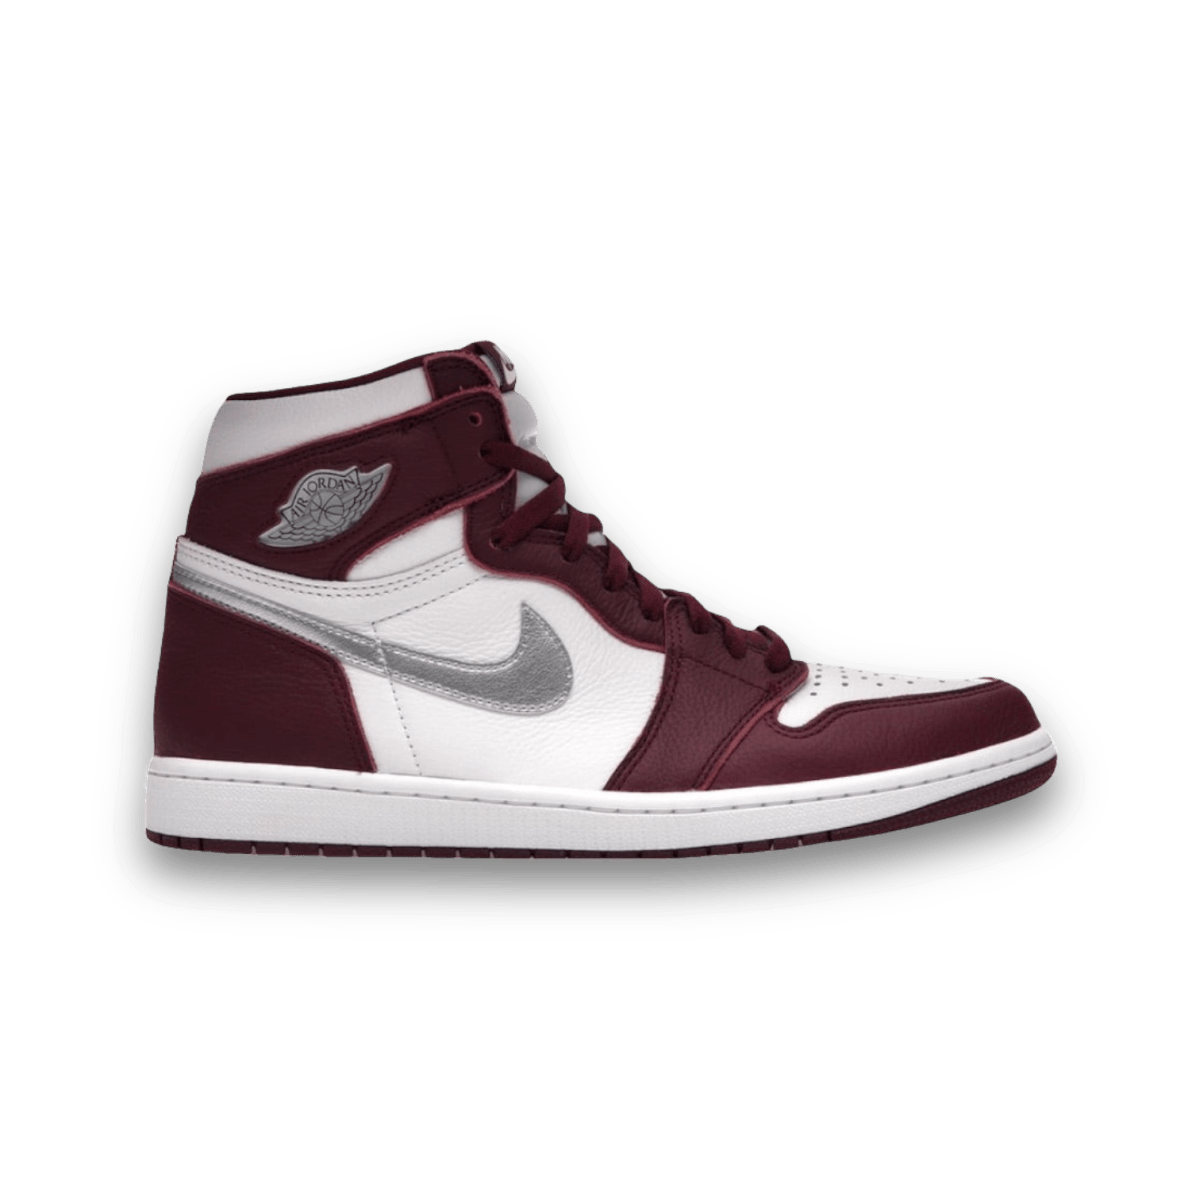 Jordan 1 Retro High OG Bordeaux - Grade School - High Sneaker - Jawns on Fire Sneakers & Streetwear